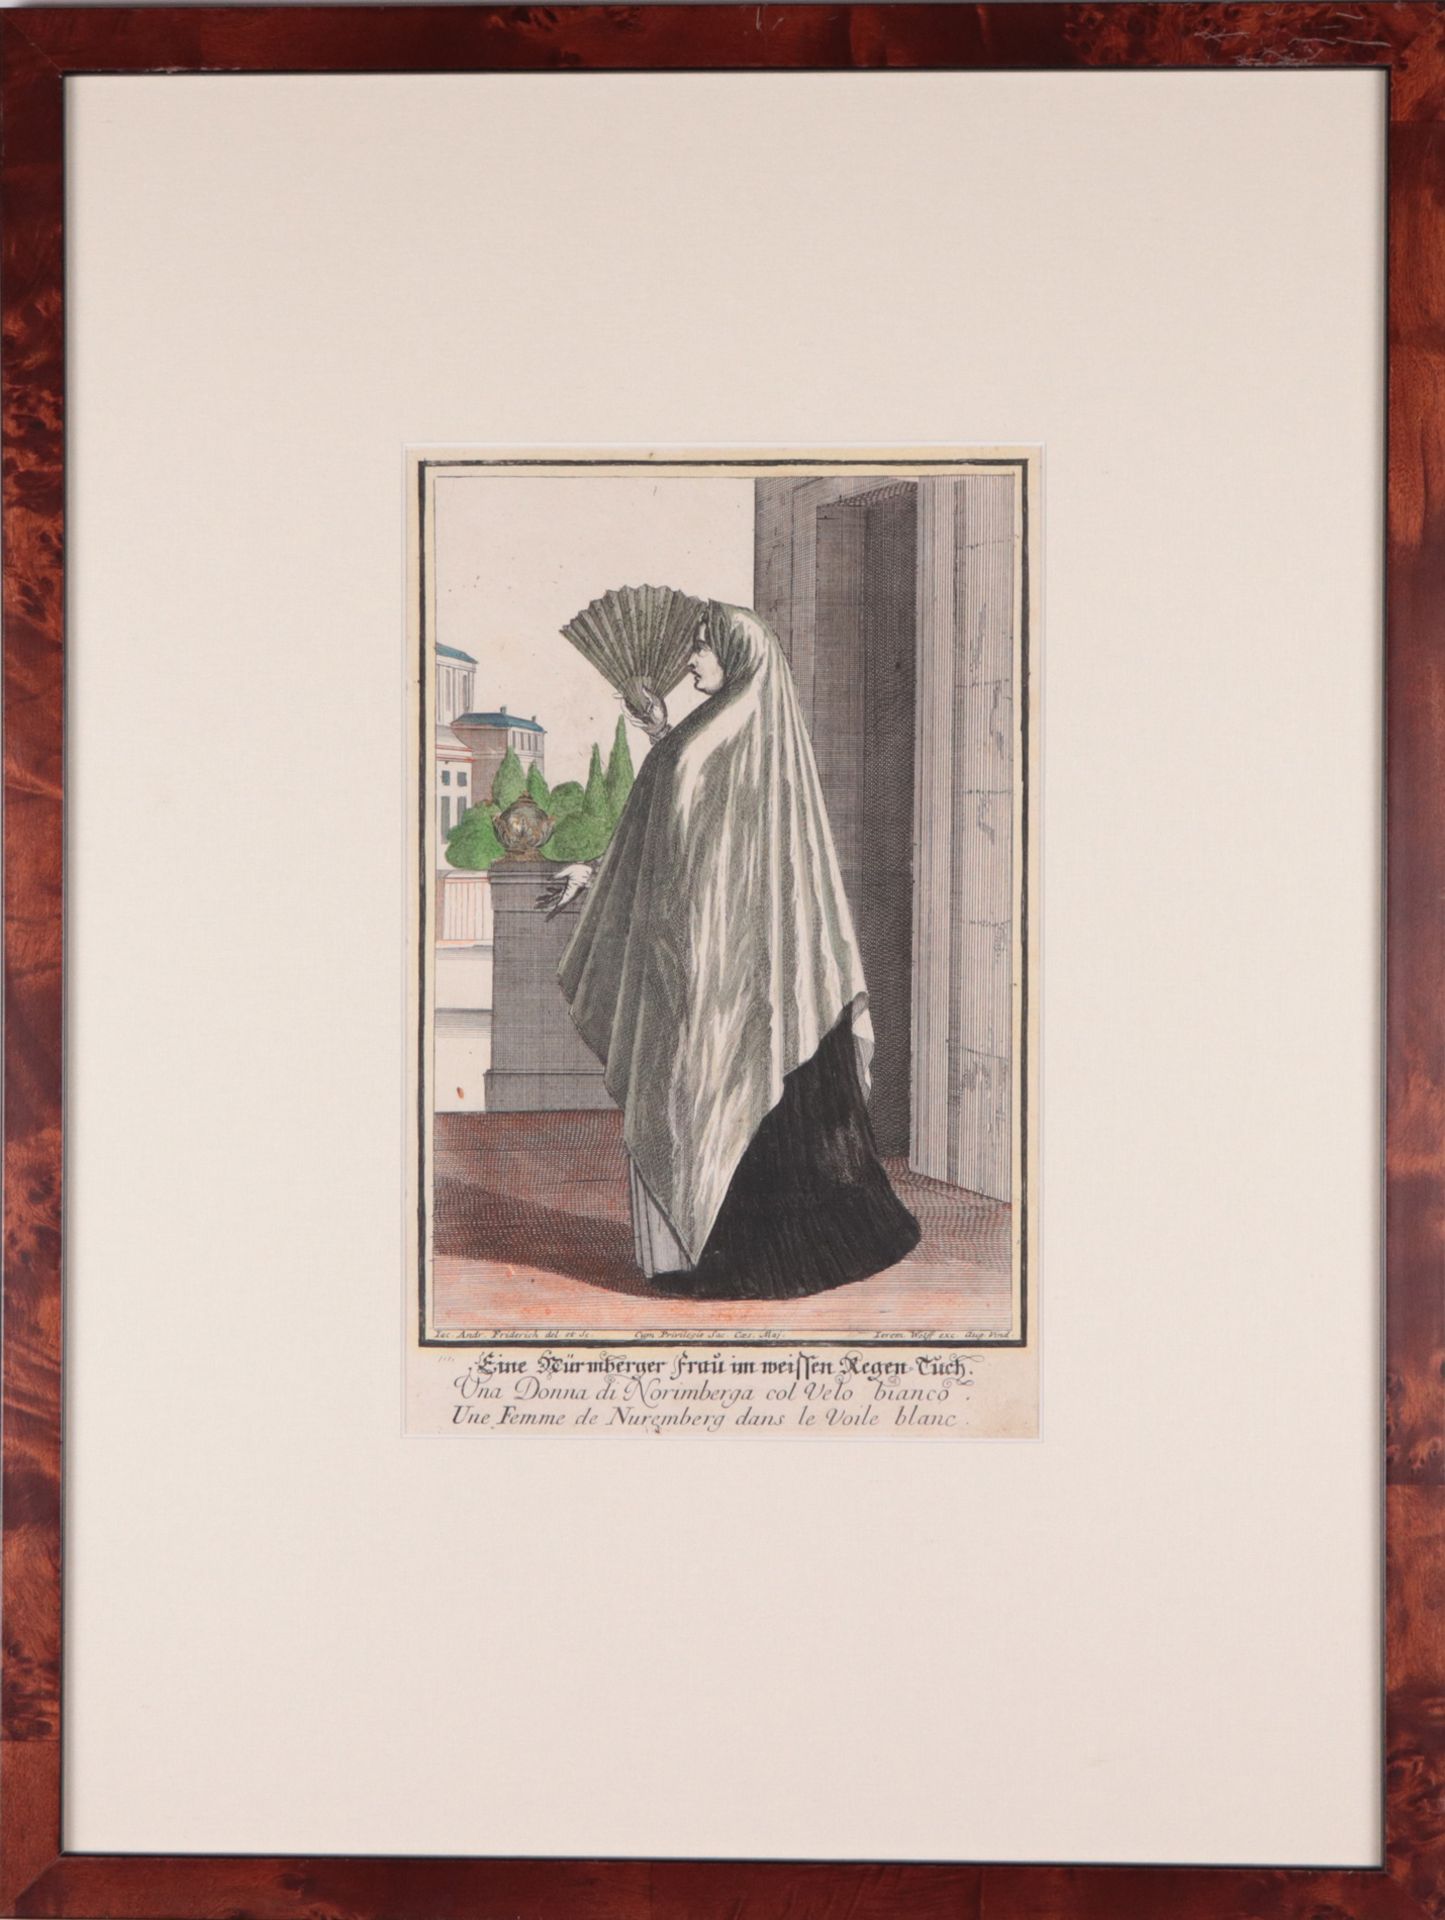 Nürnberger Trachten - 3 Stück 3 St. bestehend aus: 1x "Eine Nürnberger Frau im weißen Regen-Tuch", - Image 3 of 14